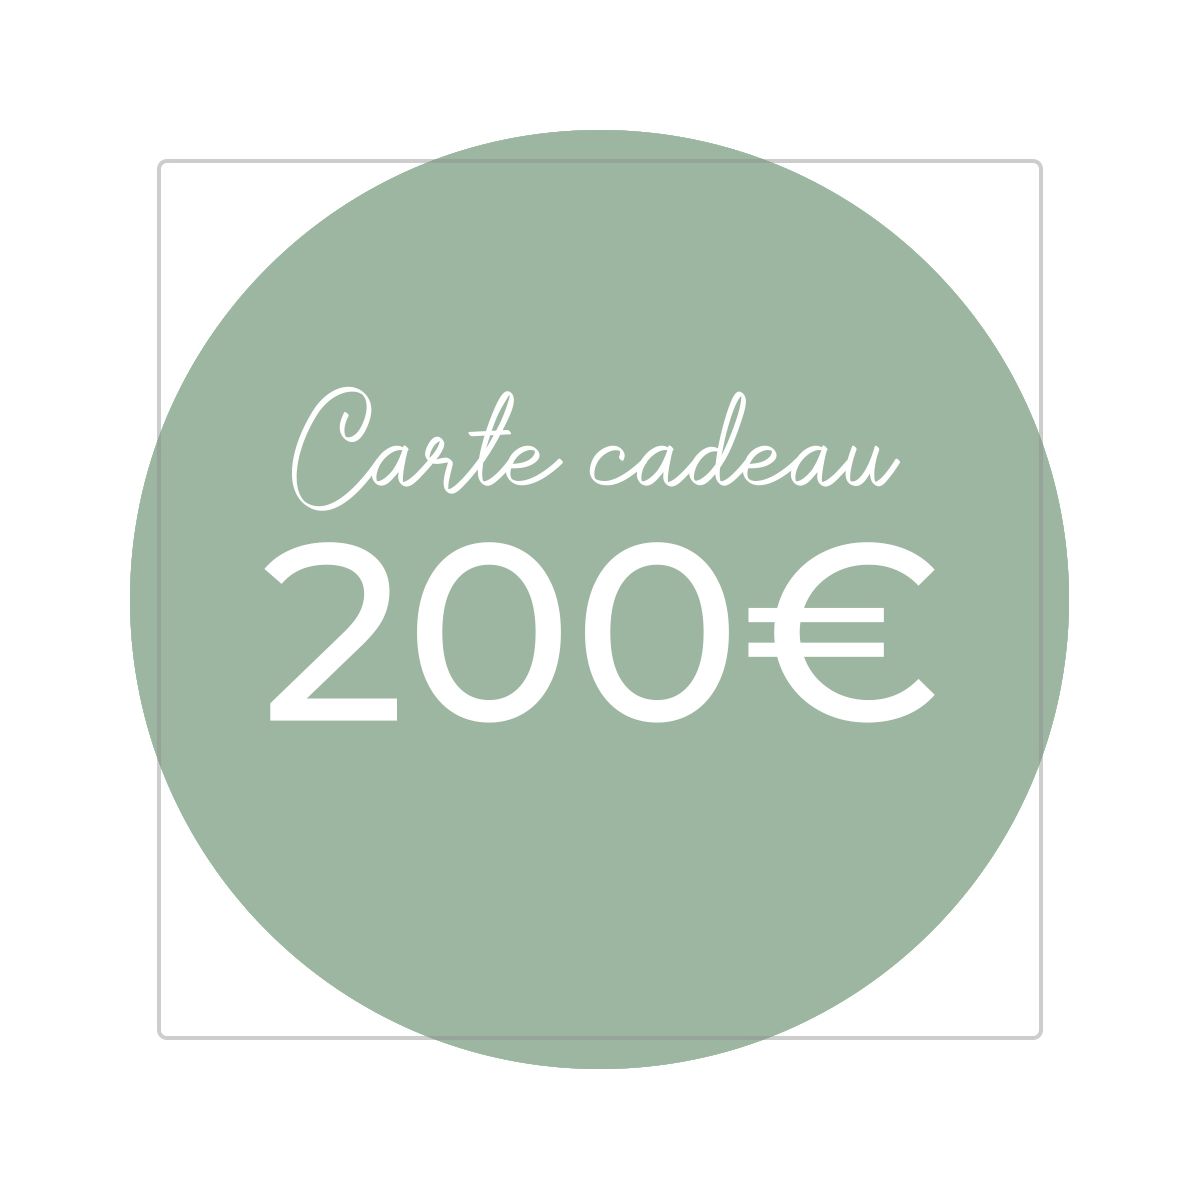 Carte cadeau 200€ - Version numérique